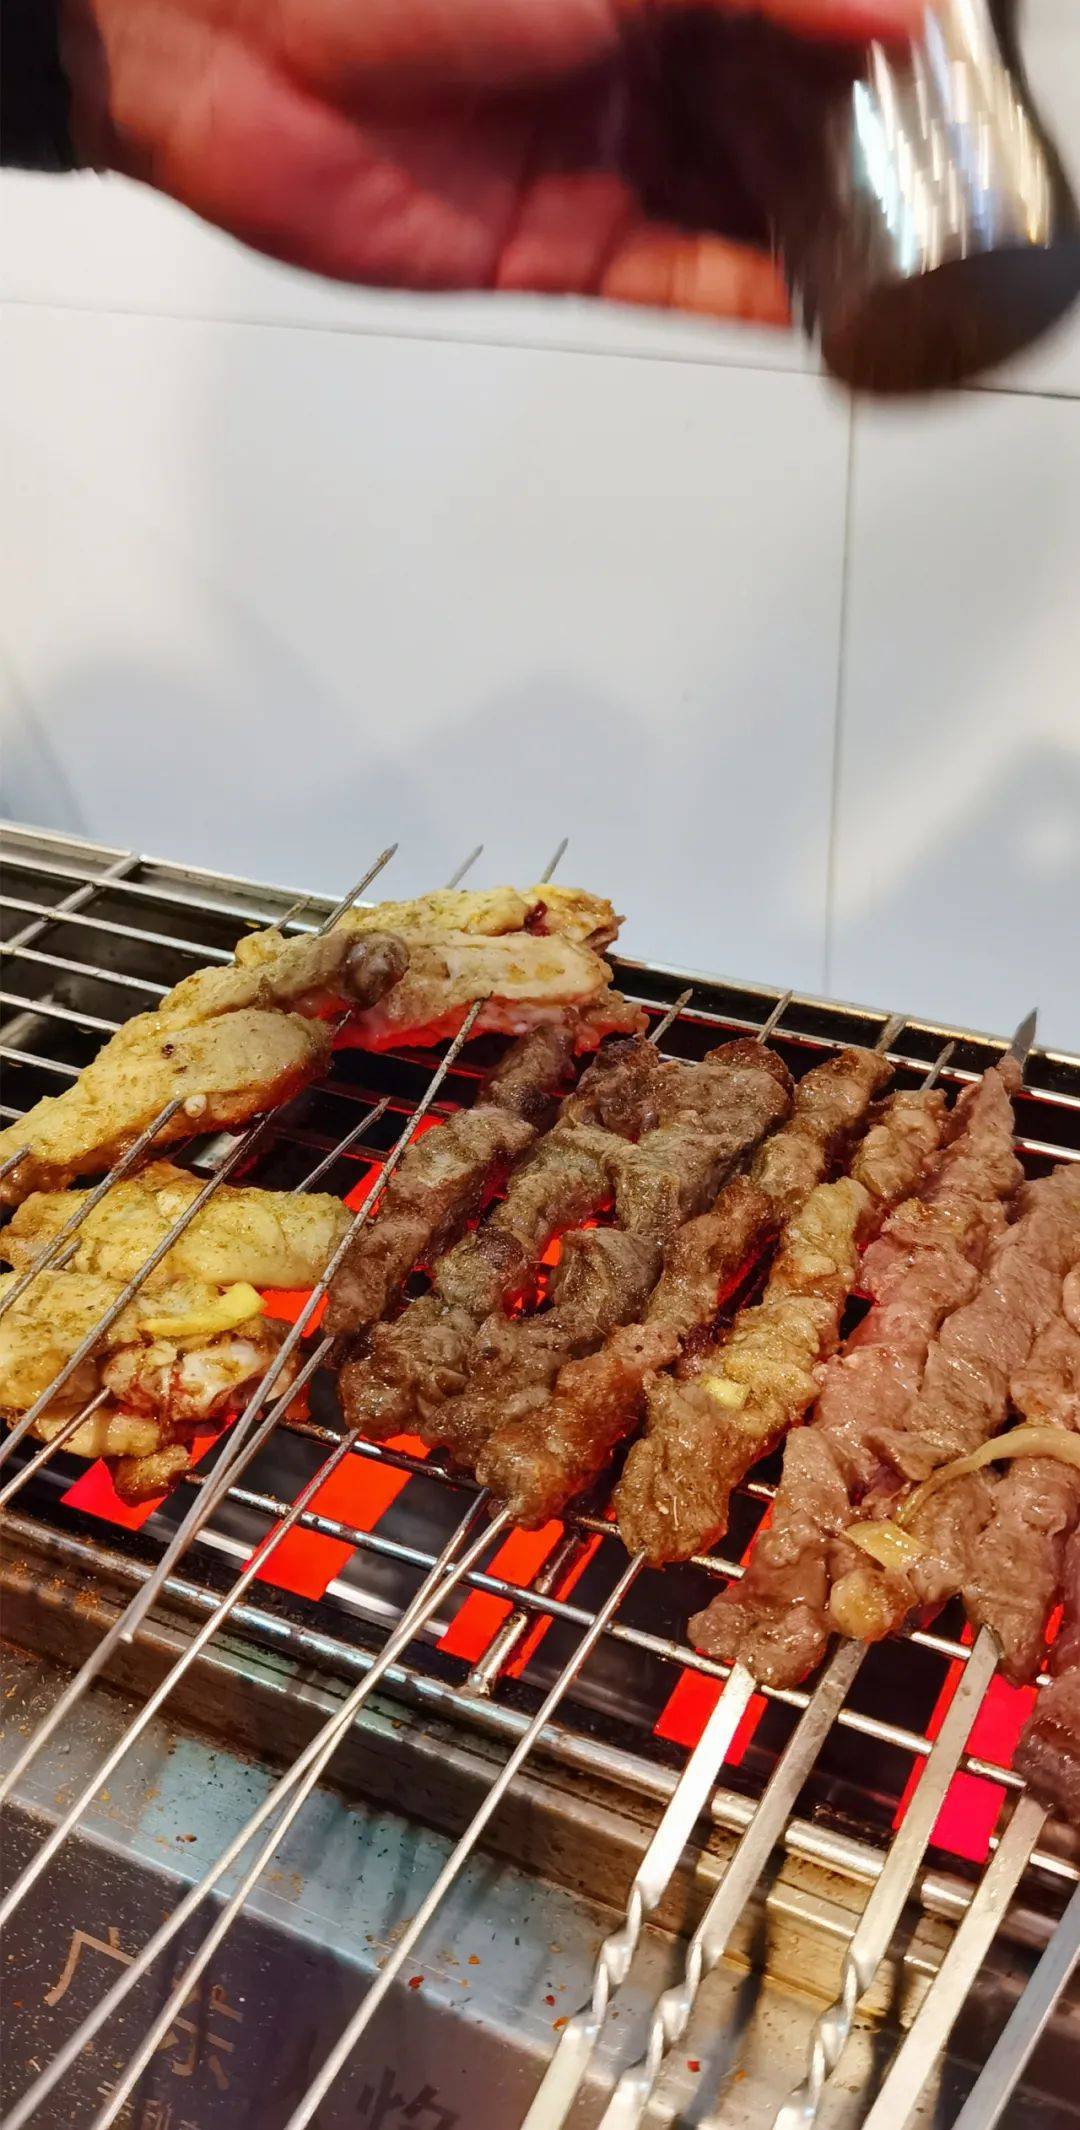 武漢熱幹面、新疆風味烤串來新加坡了！吃面撸串僅9.9新幣，手慢無